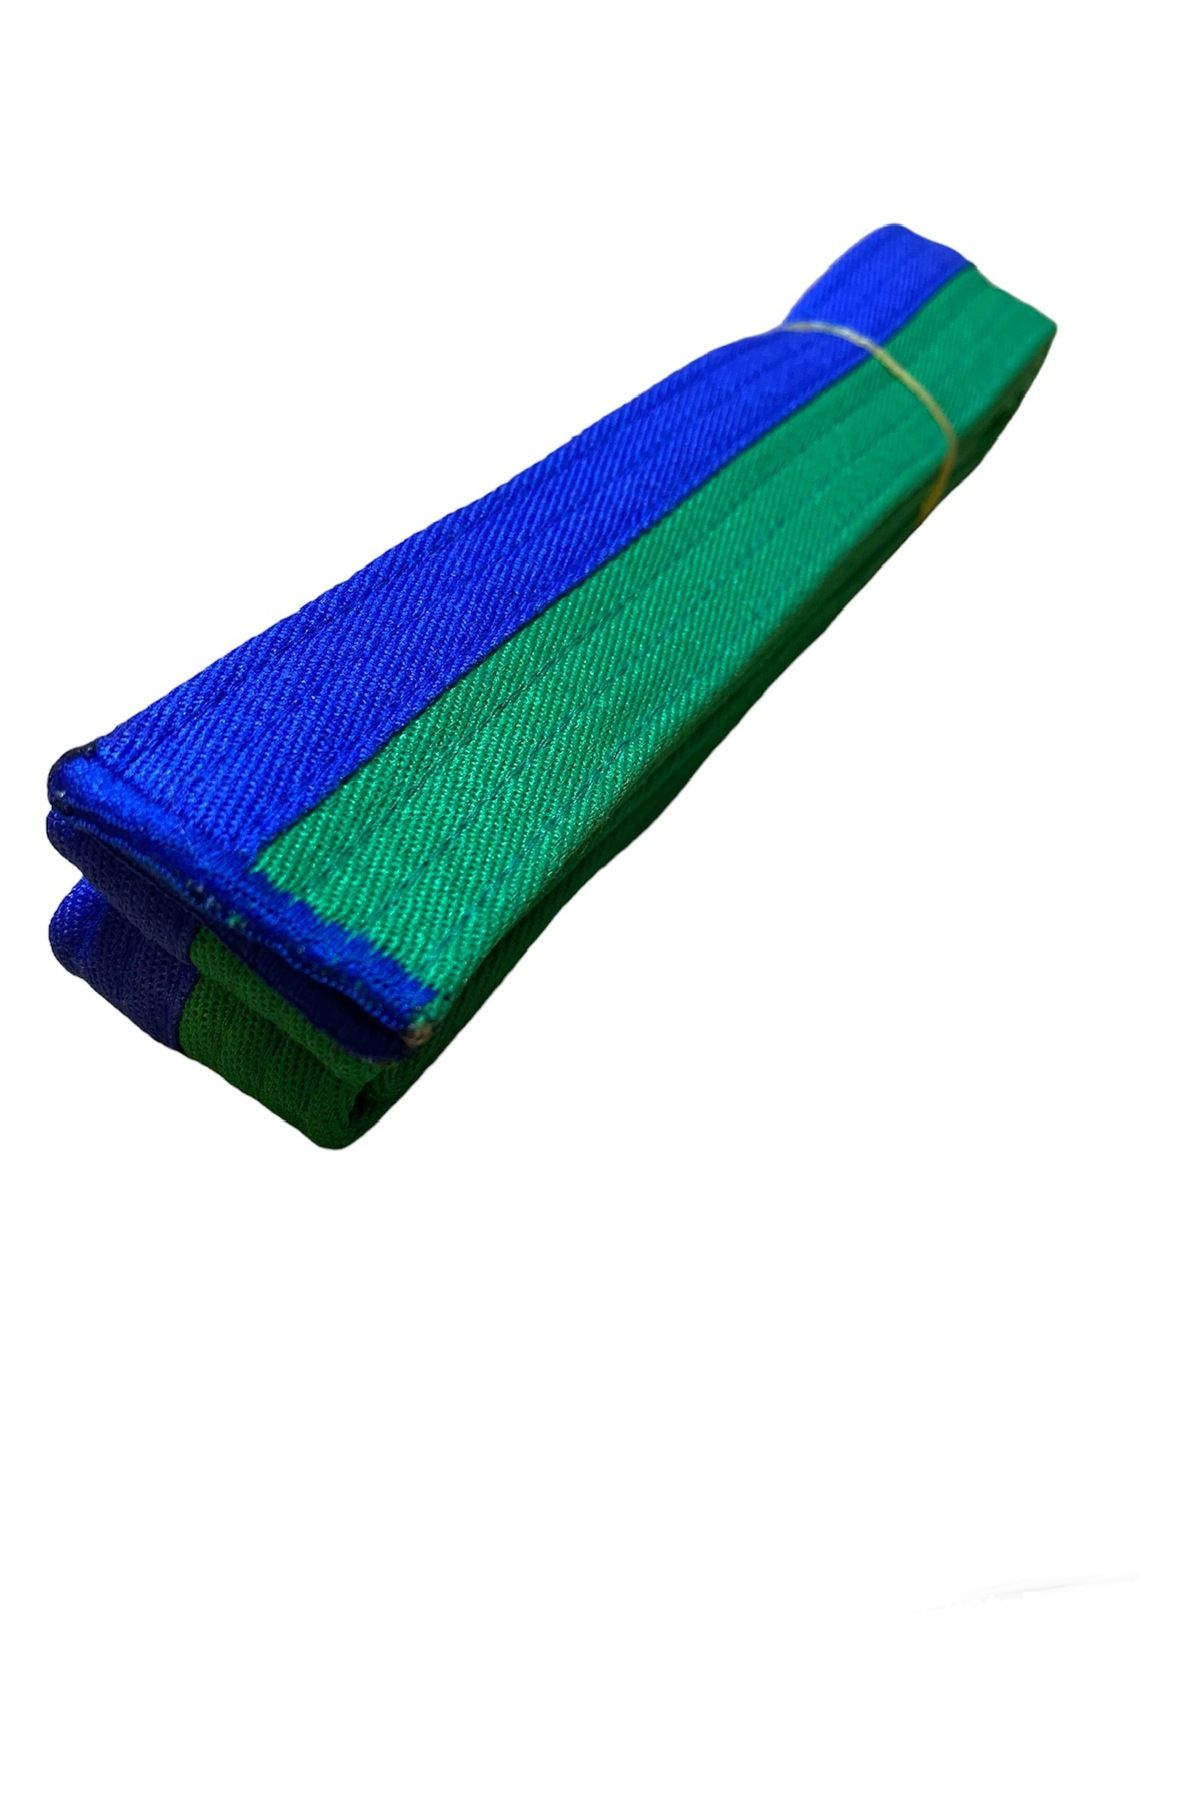 REFLEKS SPOR Refleks Taekwondo Yeşil Mavi Kuşak & Tekvando Yeşil Mavi Kuşak